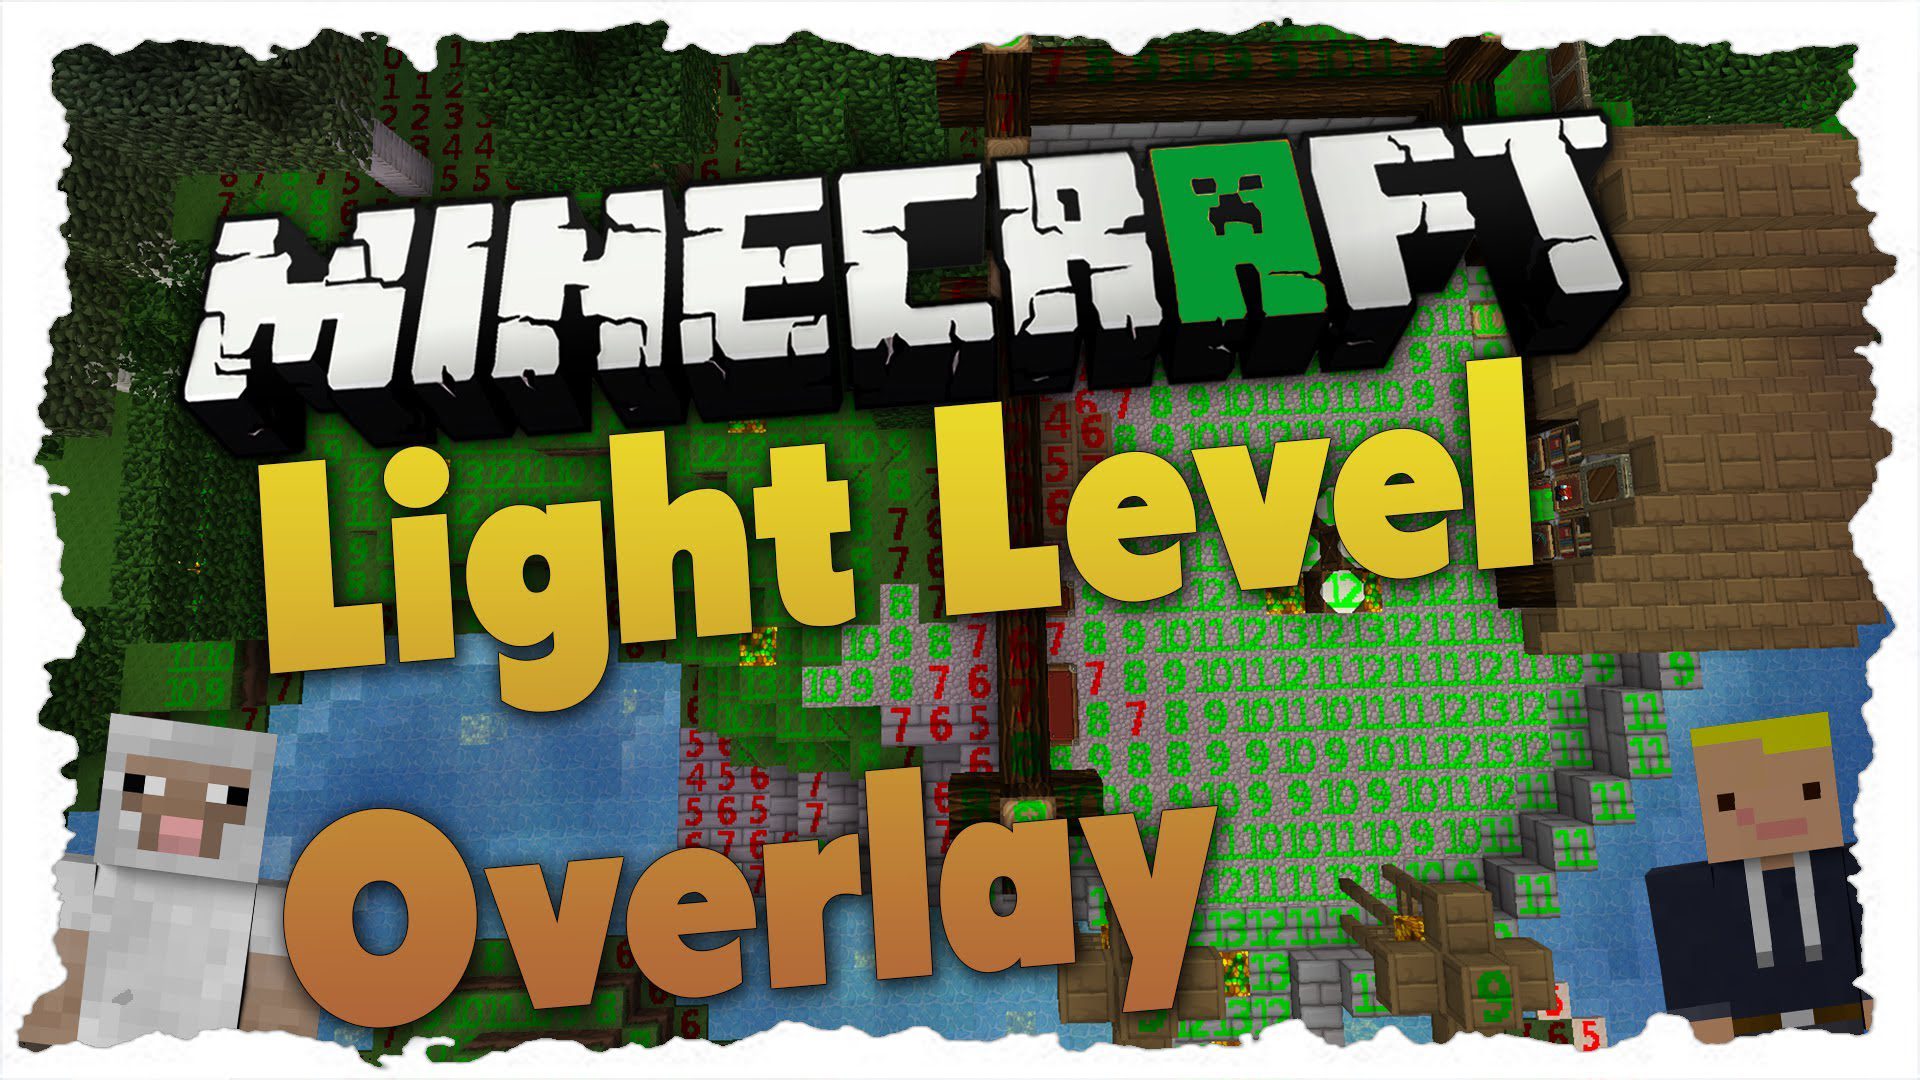 Light Level Overlay Reloaded Mod